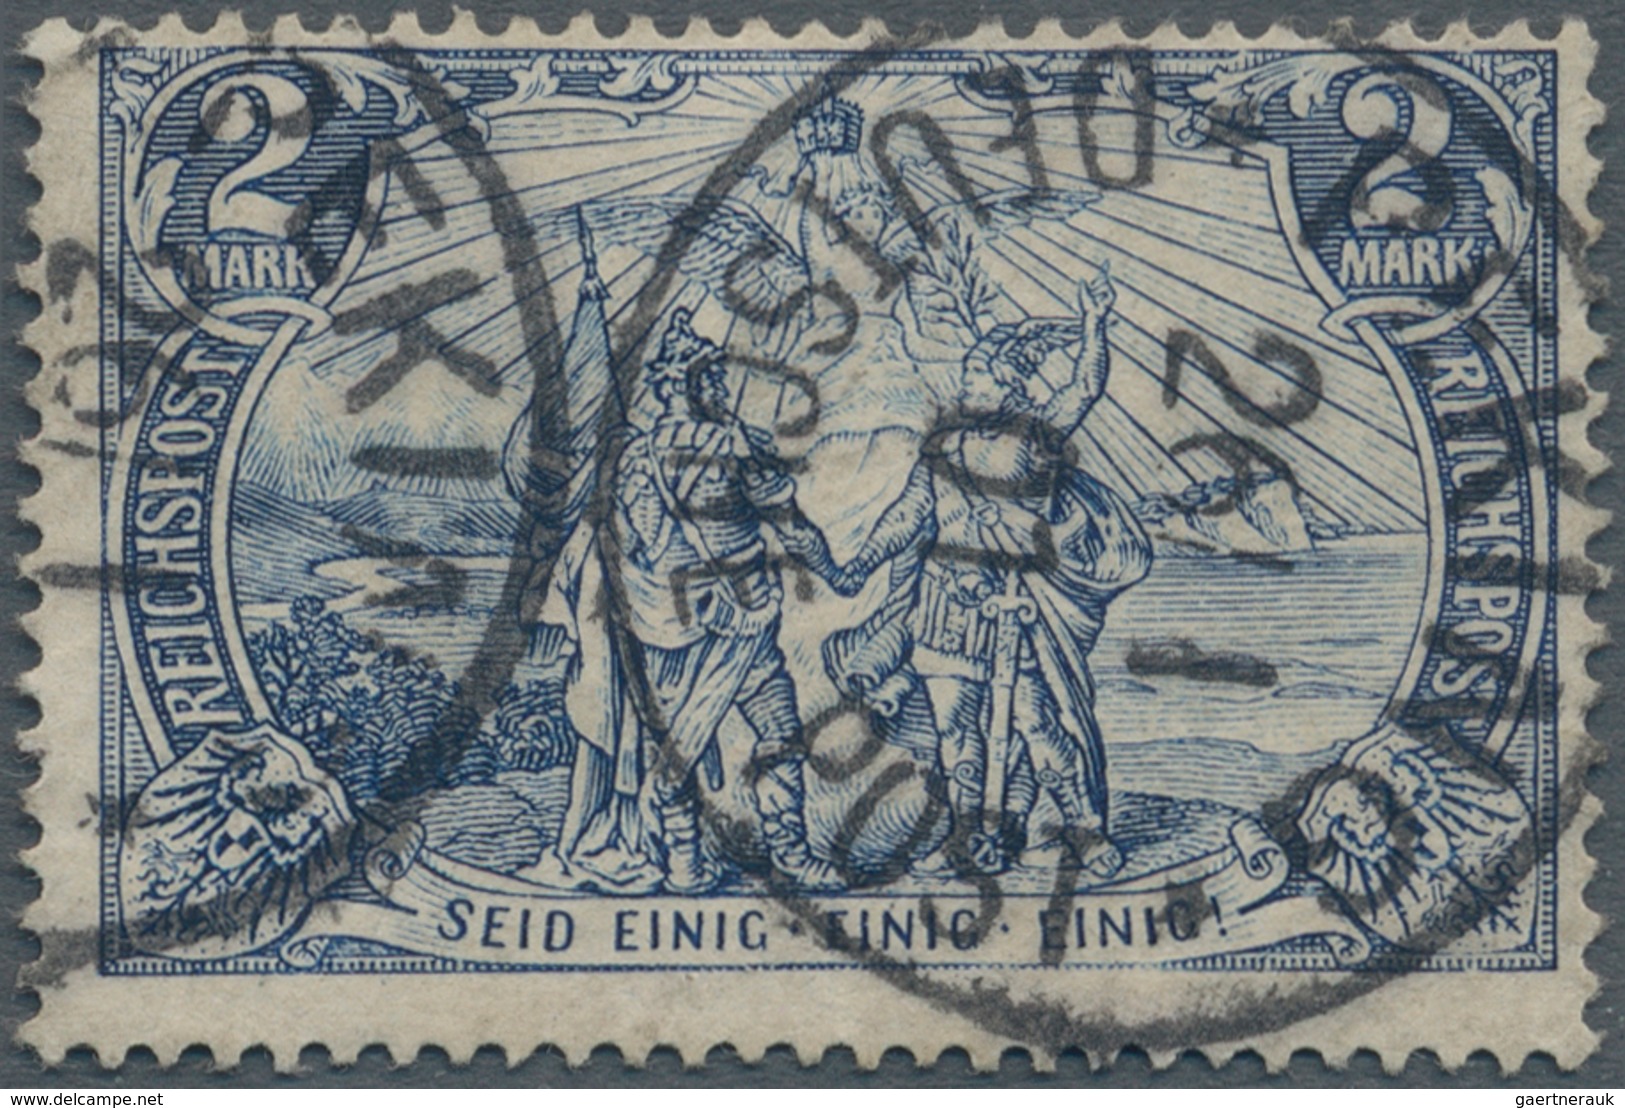 Deutsche Post In China: 1900 Petschili Germania Reichspost 2 Mark Schwarzblau, Type I, Sauber Und Kl - China (offices)